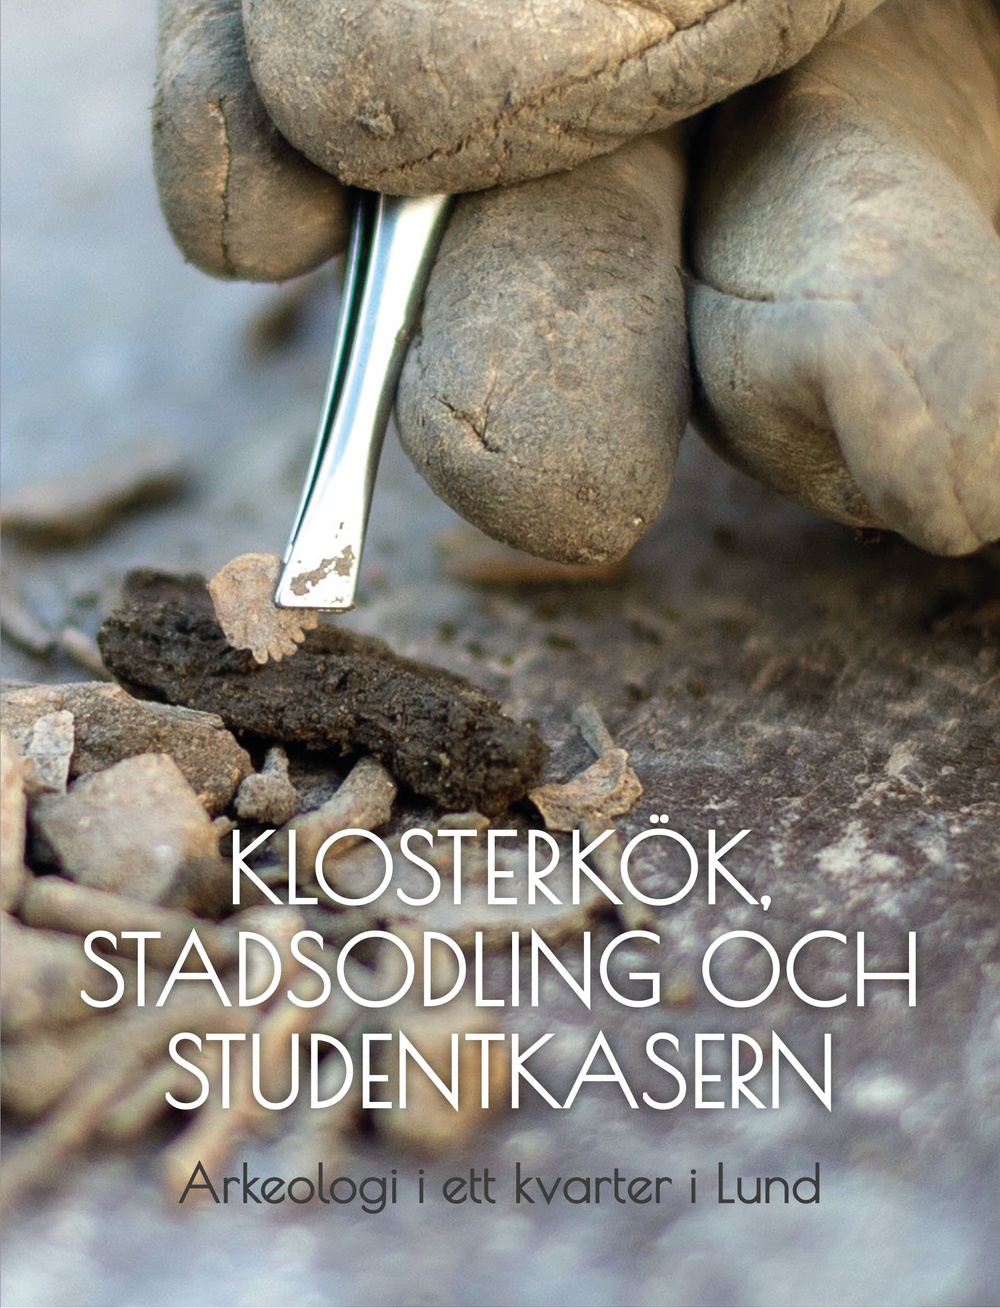 Framsidan på boken "Klosterkök, stadsodling och studentkasern – Arkeologi i ett kvarter i Lund". 